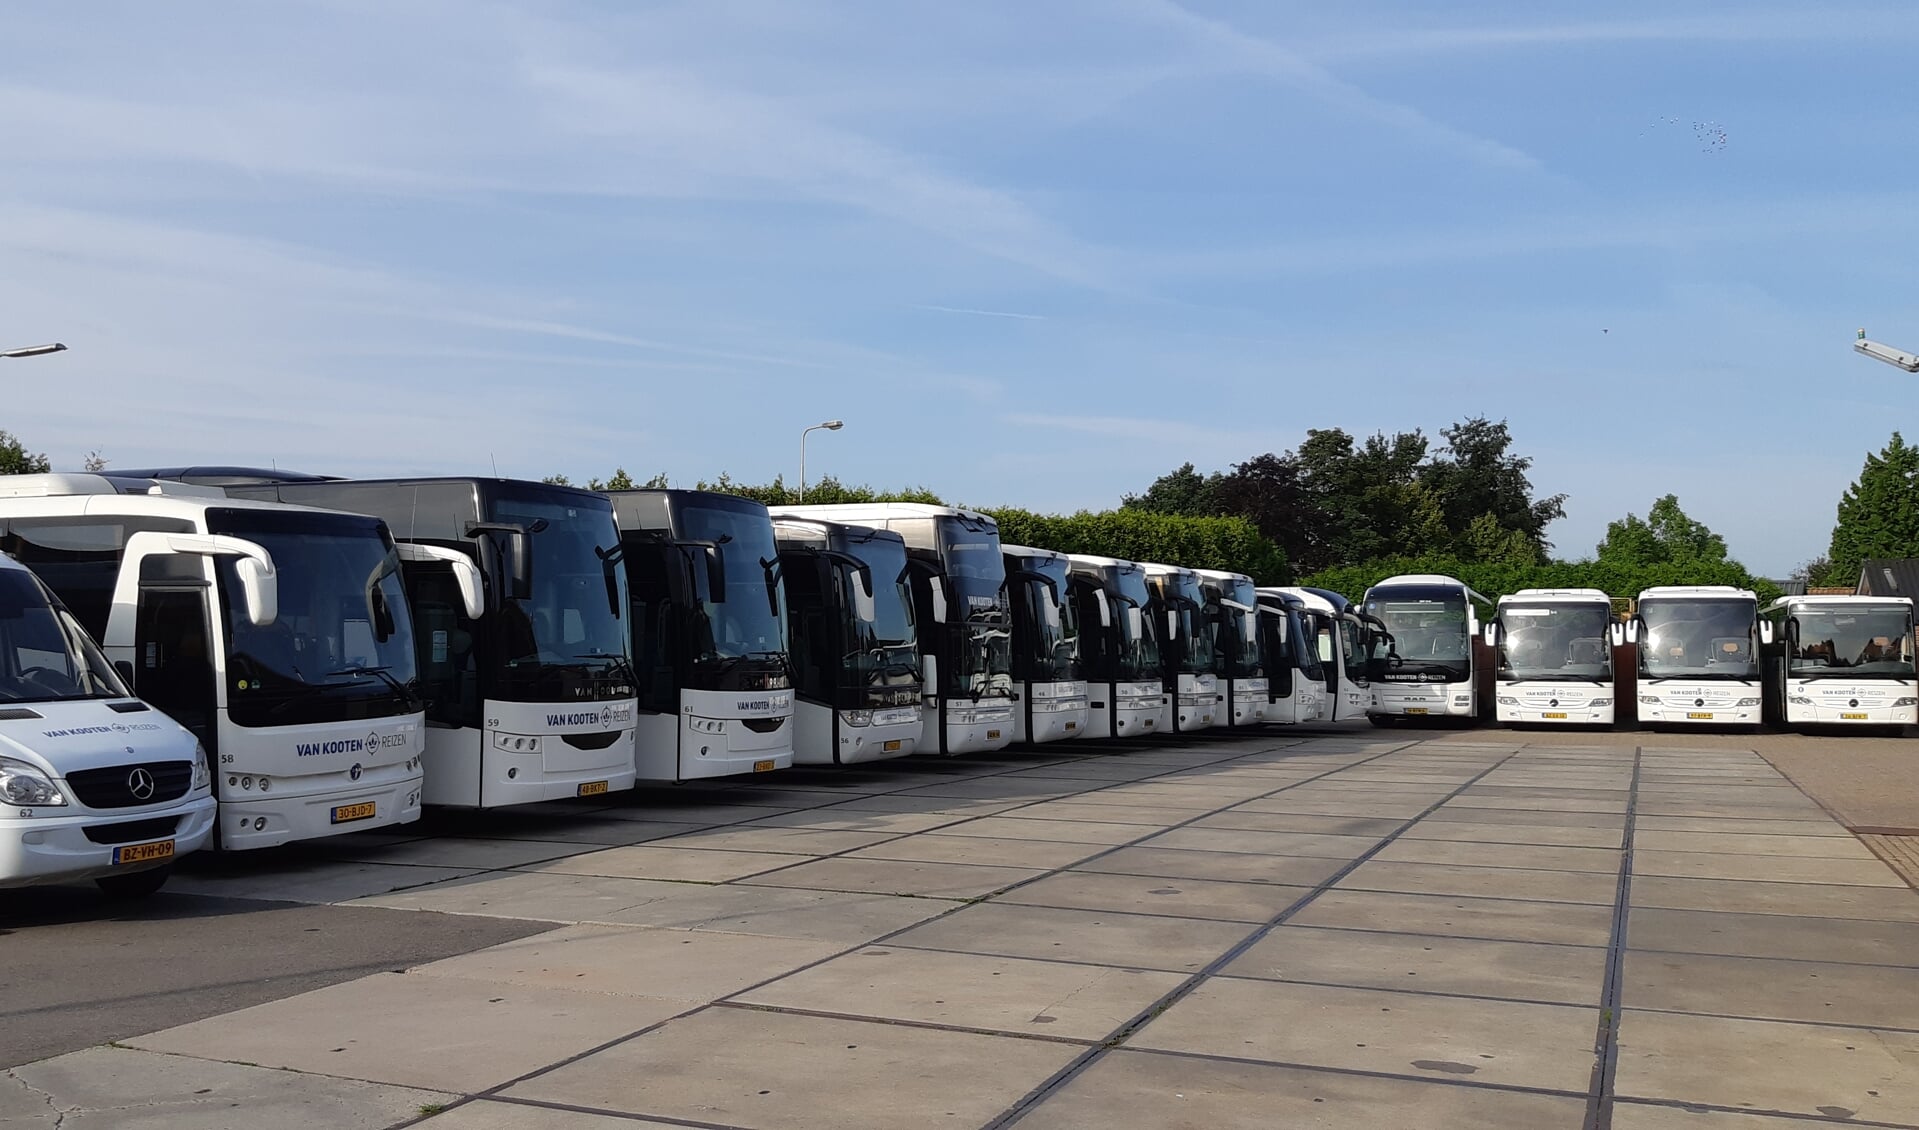 De bussen van Van Kooten Reizen in Kootwijkerbroek staan stil door de crisis rond het coronavirus.